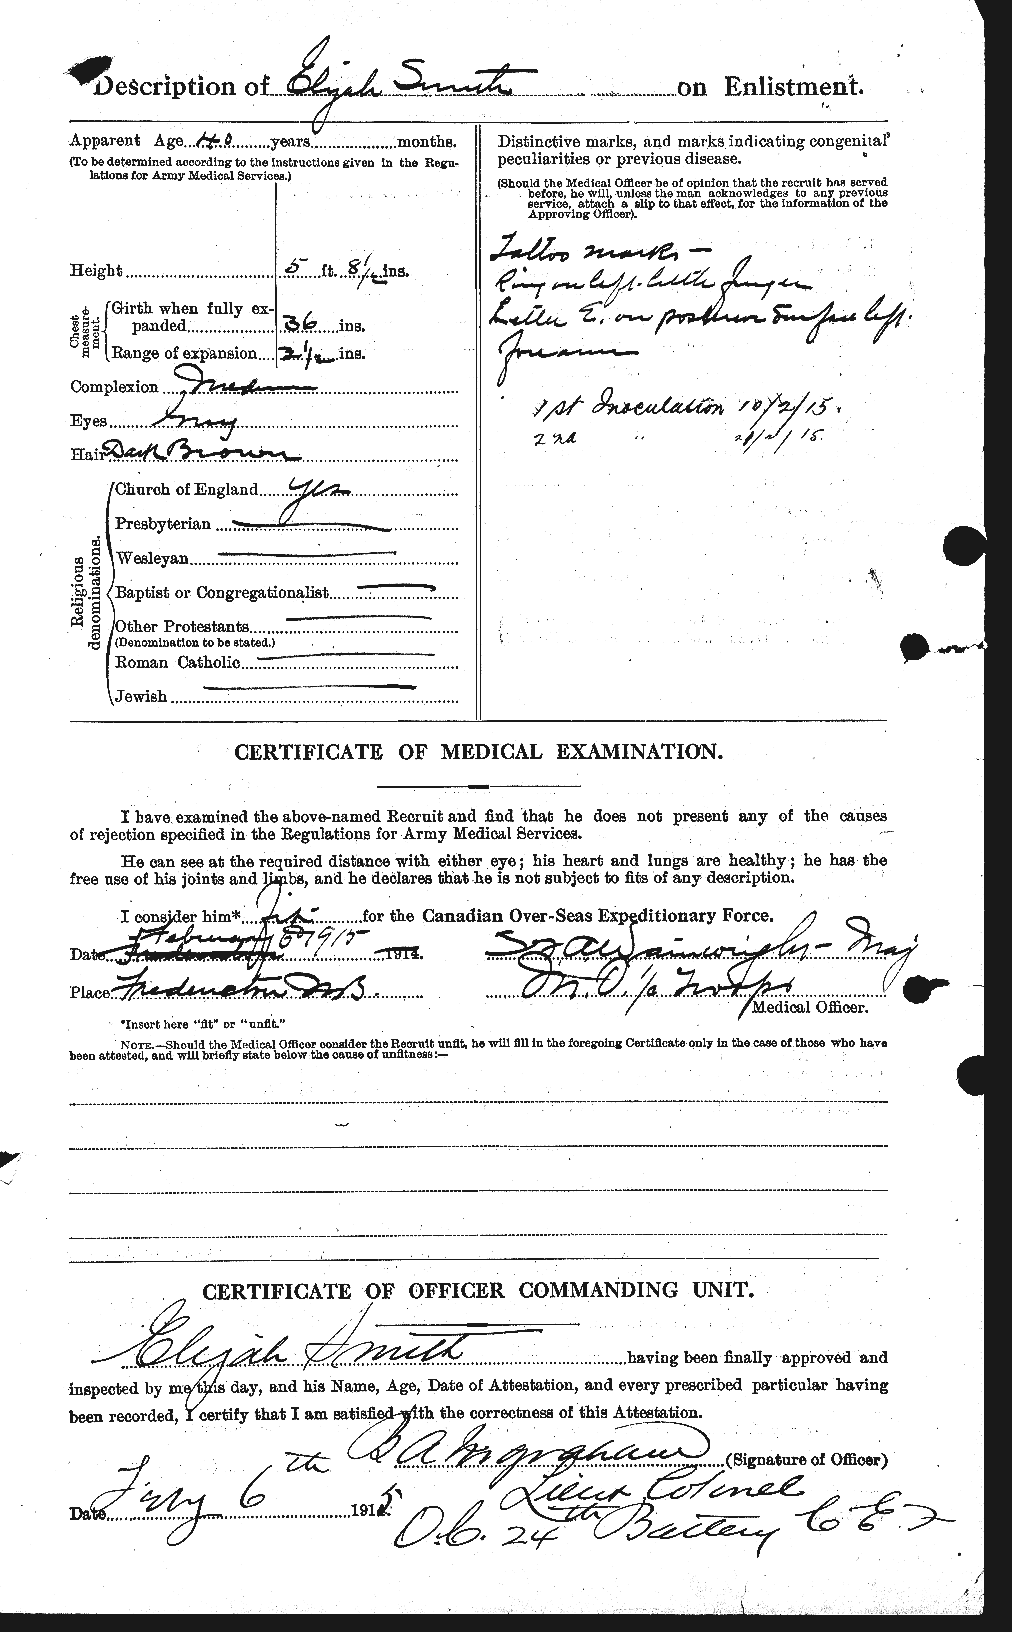 Dossiers du Personnel de la Première Guerre mondiale - CEC 621091b